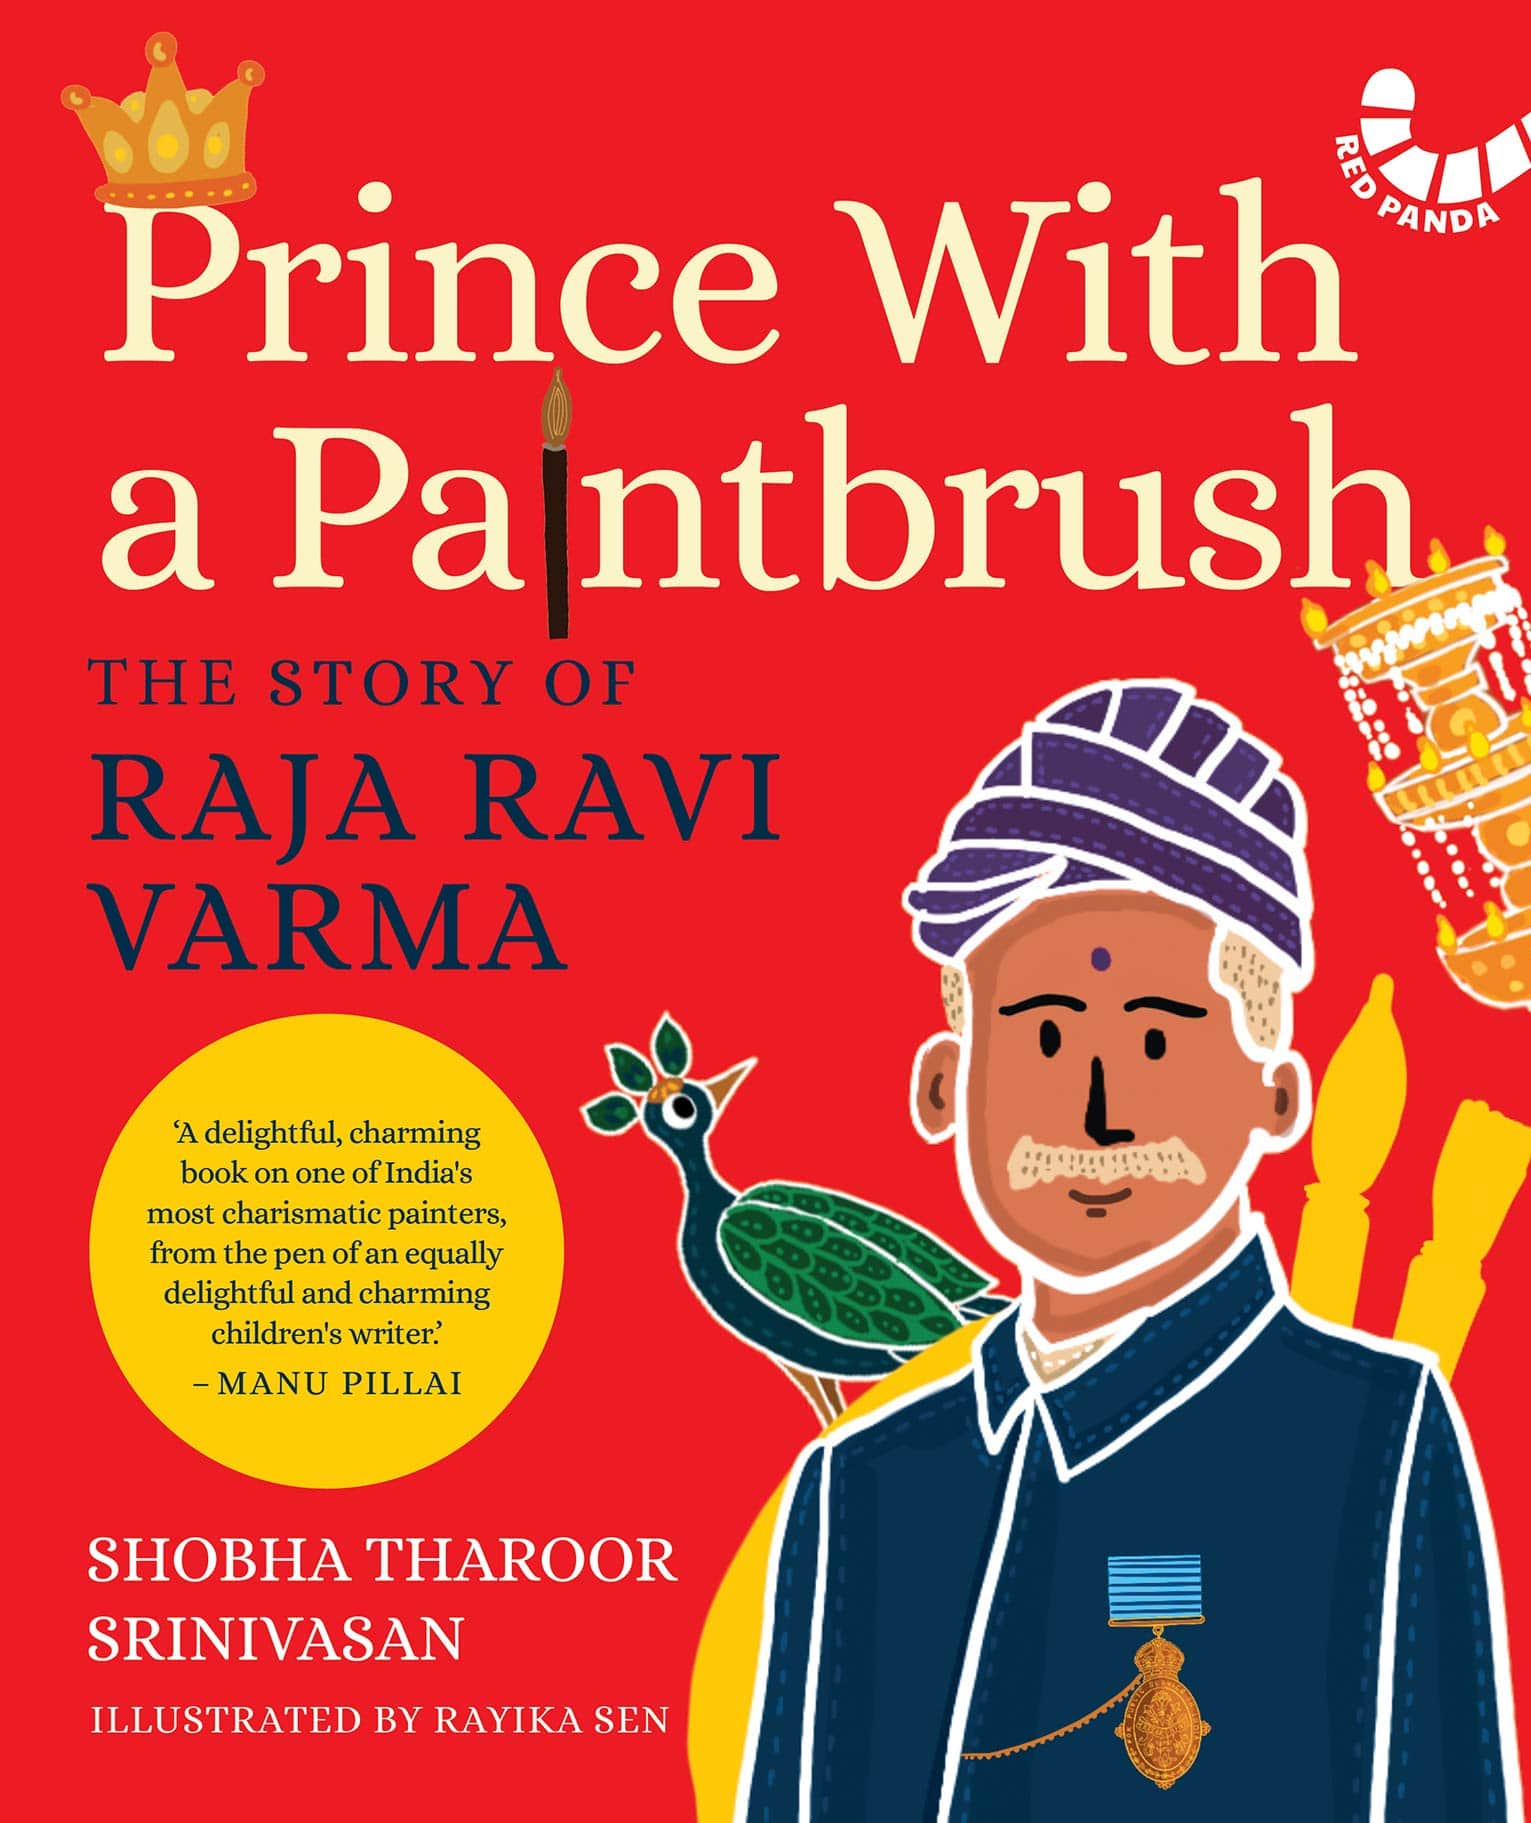 IMG : Prince With a Paintbrush. The story of Raja Ravi Varma